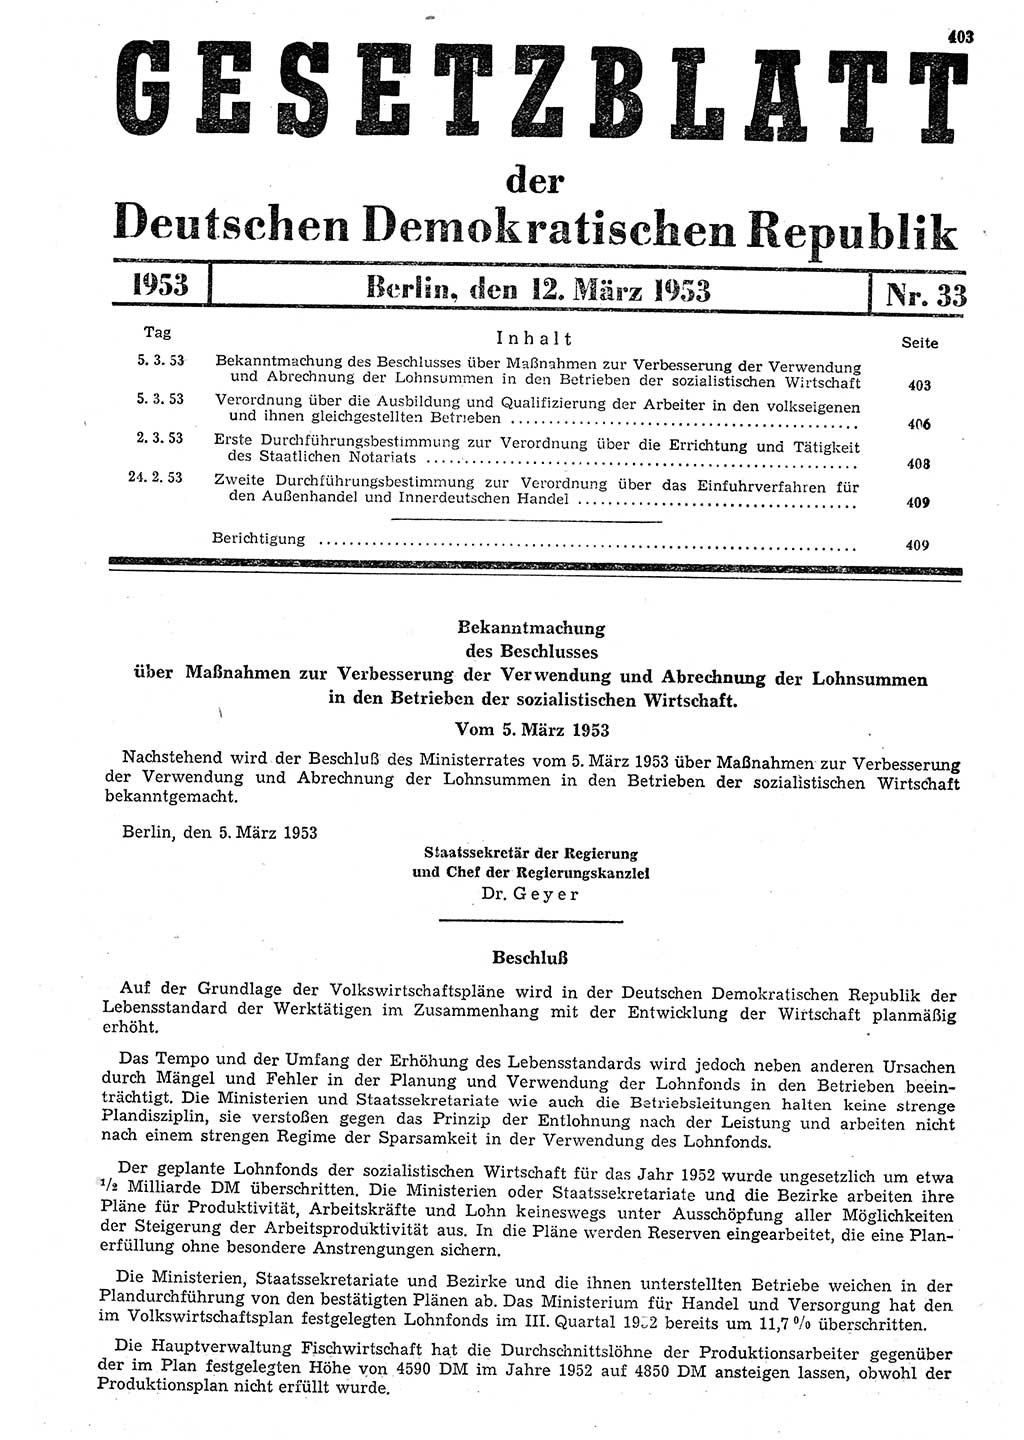 Gesetzblatt (GBl.) der Deutschen Demokratischen Republik (DDR) 1953, Seite 403 (GBl. DDR 1953, S. 403)